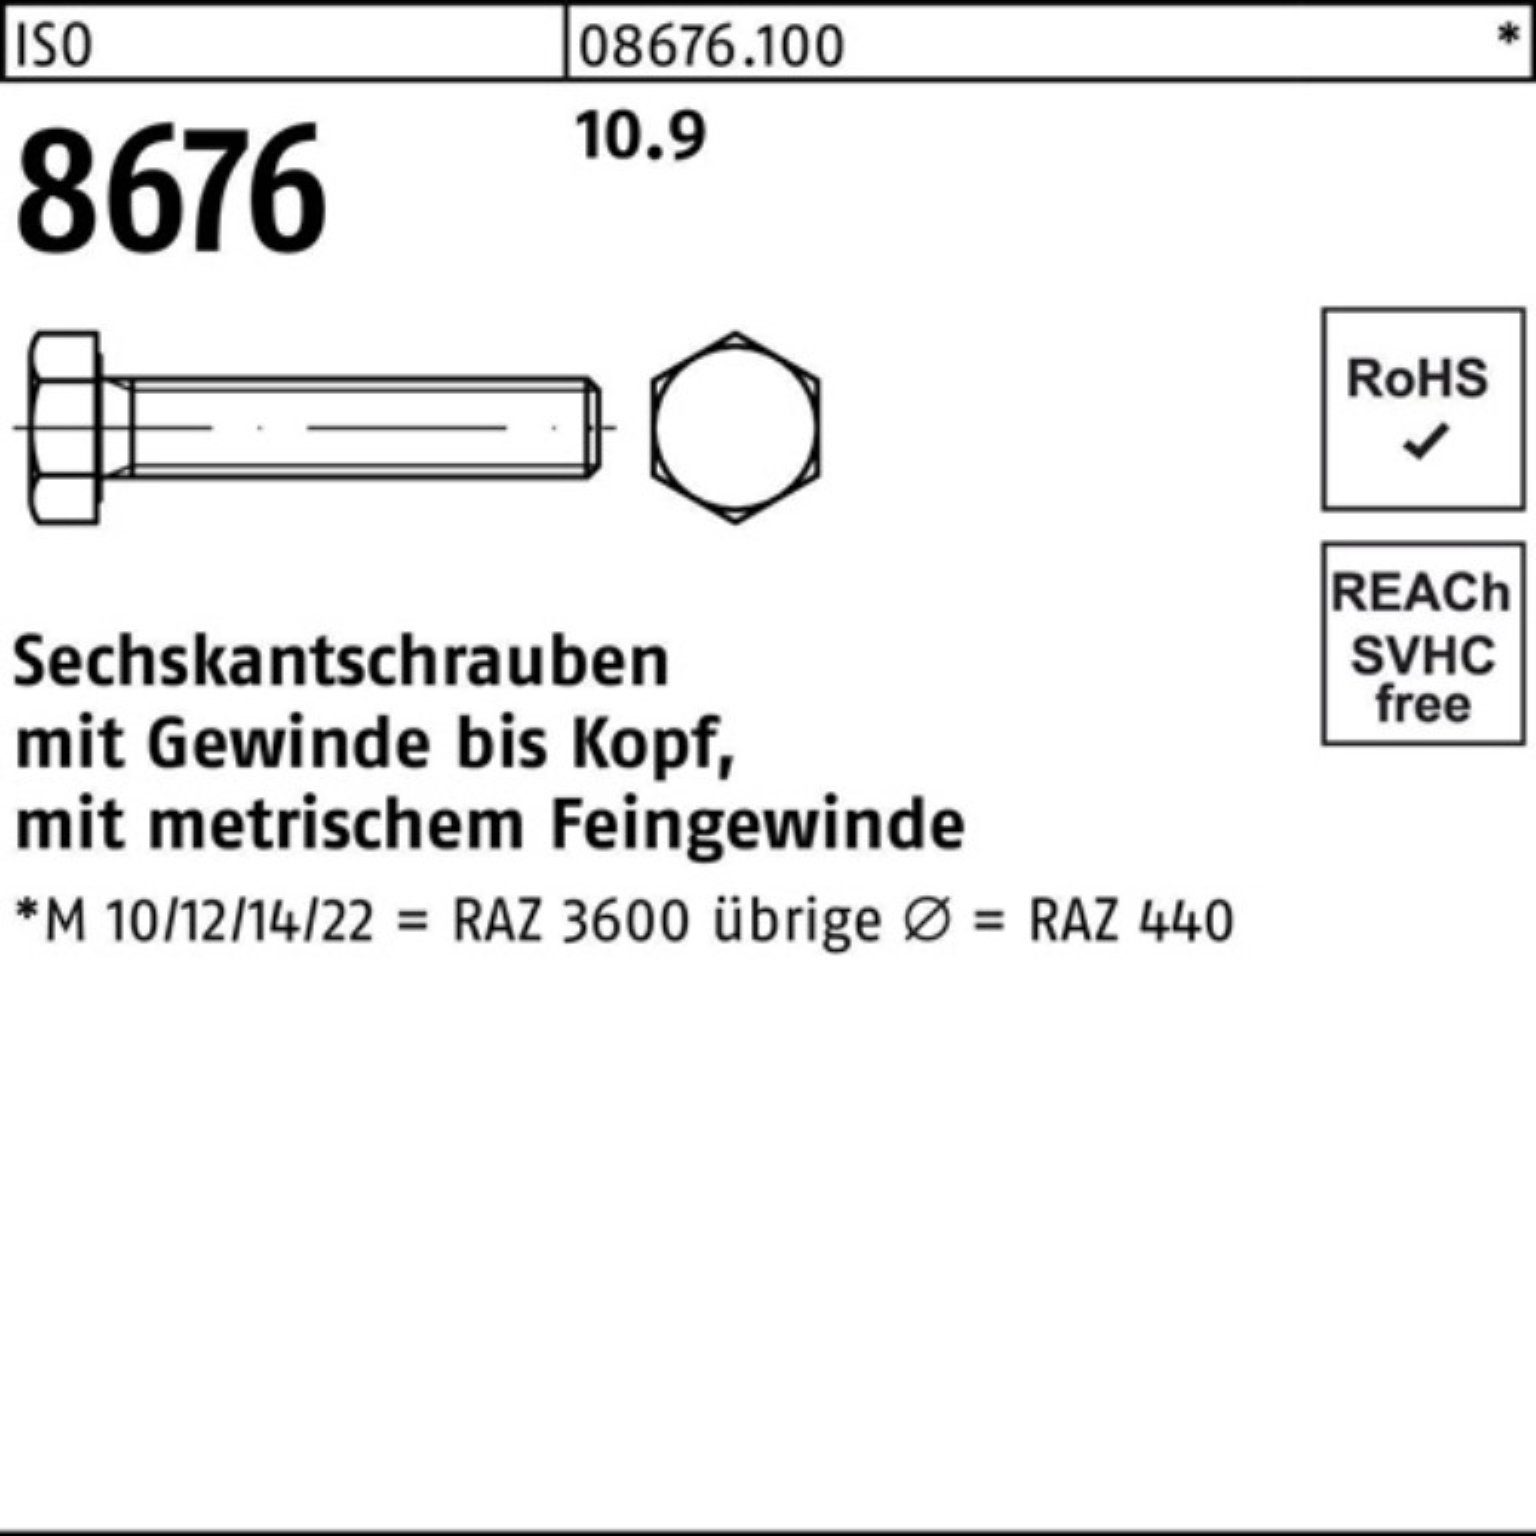 10.9 100er Reyher IS Sechskantschraube M20x1,5x 8676 ISO Stück 25 85 Pack Sechskantschraube VG